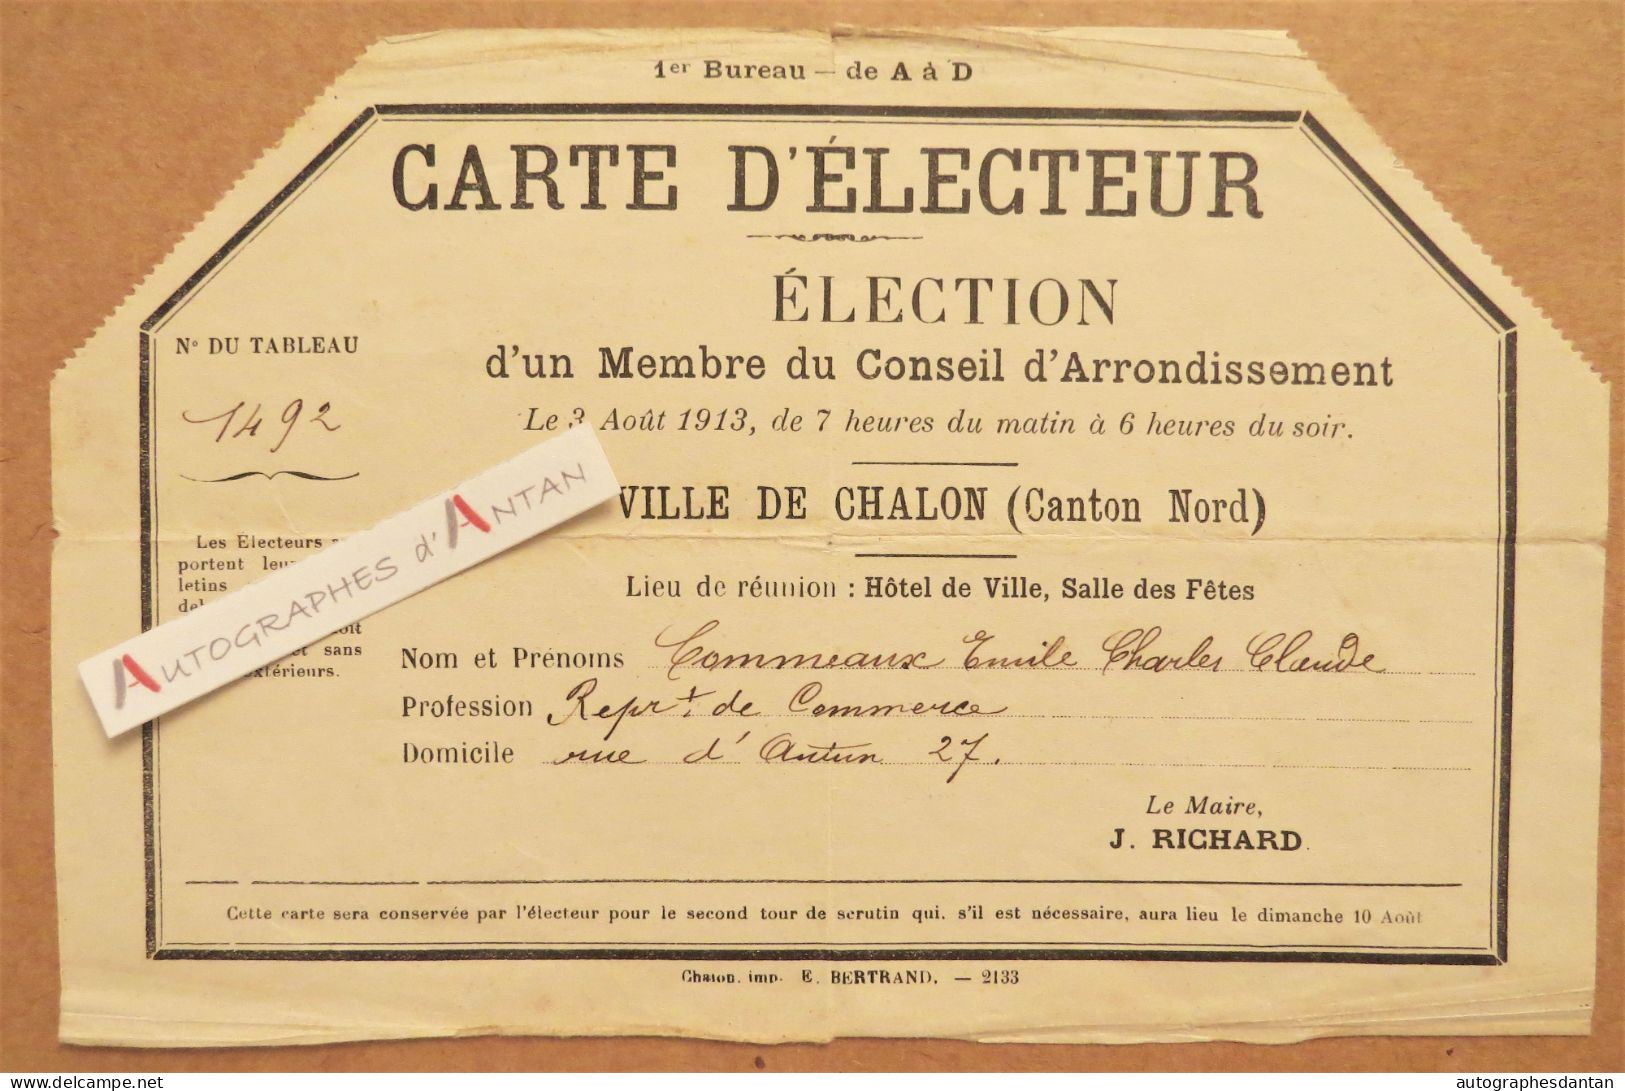 ● Carte D'électeur 1913 M. Commeaux - Chalon Sur Saône Saône Et Loire - Représentant De Commerce - 27 Rue D'Autun - Lidmaatschapskaarten